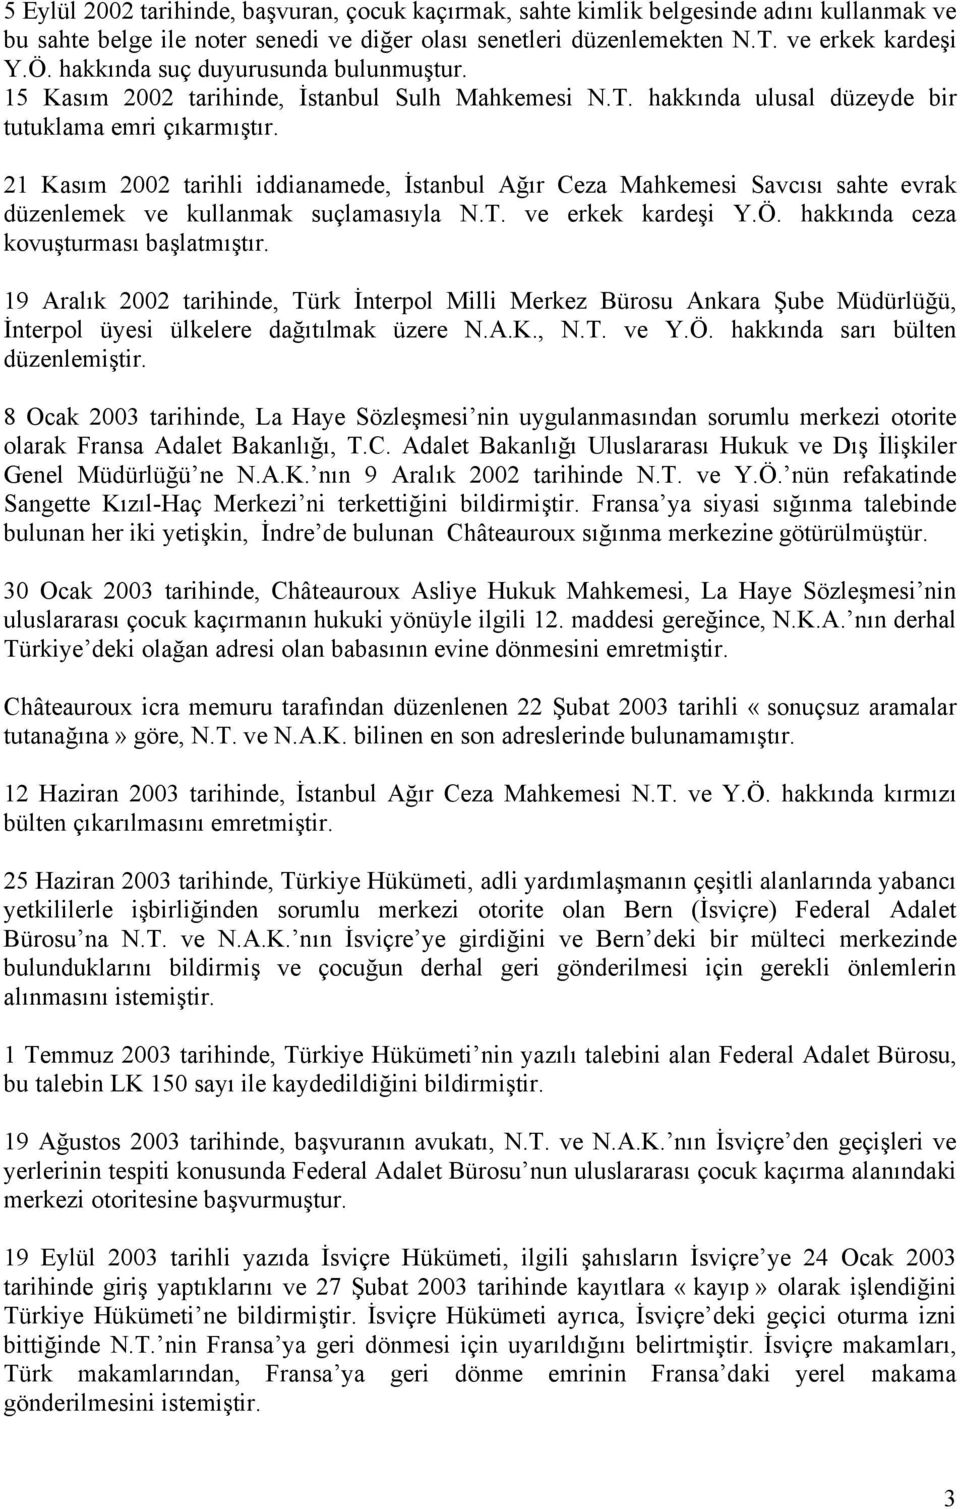 21 Kasım 2002 tarihli iddianamede, İstanbul Ağır Ceza Mahkemesi Savcısı sahte evrak düzenlemek ve kullanmak suçlamasıyla N.T. ve erkek kardeşi Y.Ö. hakkında ceza kovuşturması başlatmıştır.